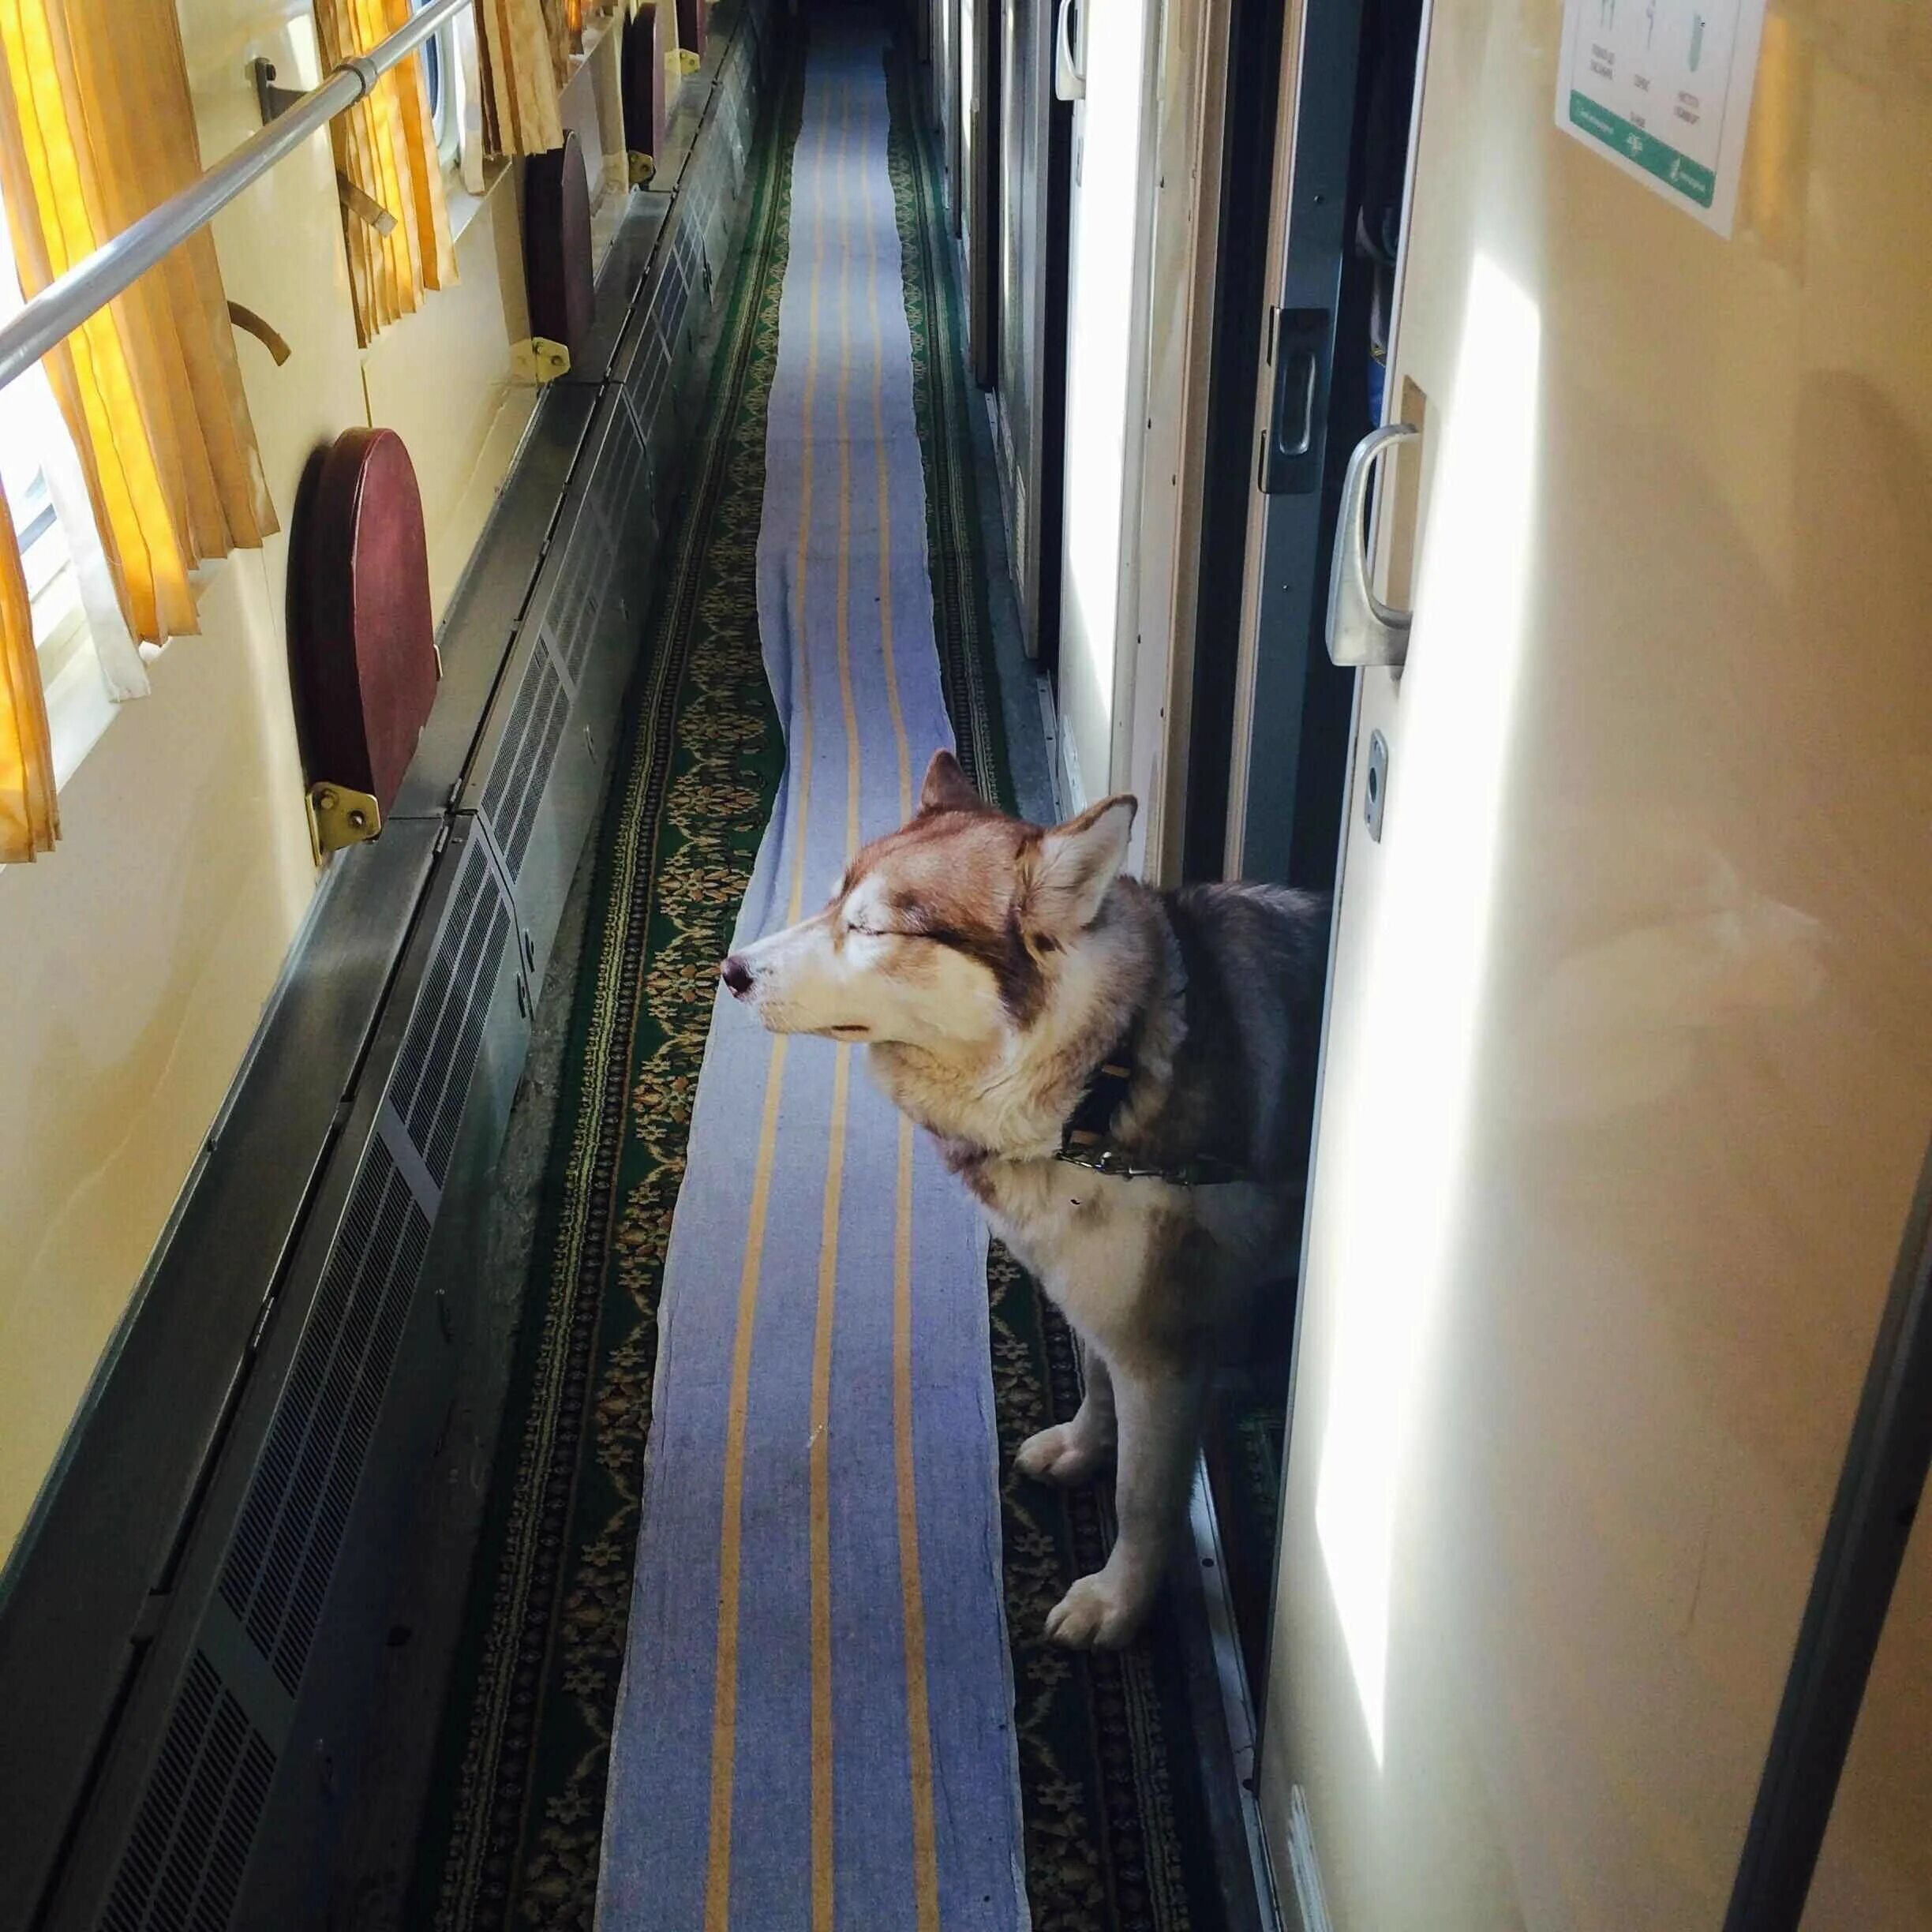 Вагон для животных. Кот в поезде. Вагон для животных в поезде. Вагон для перевозки животных. Можно перевозить собаку в поезде